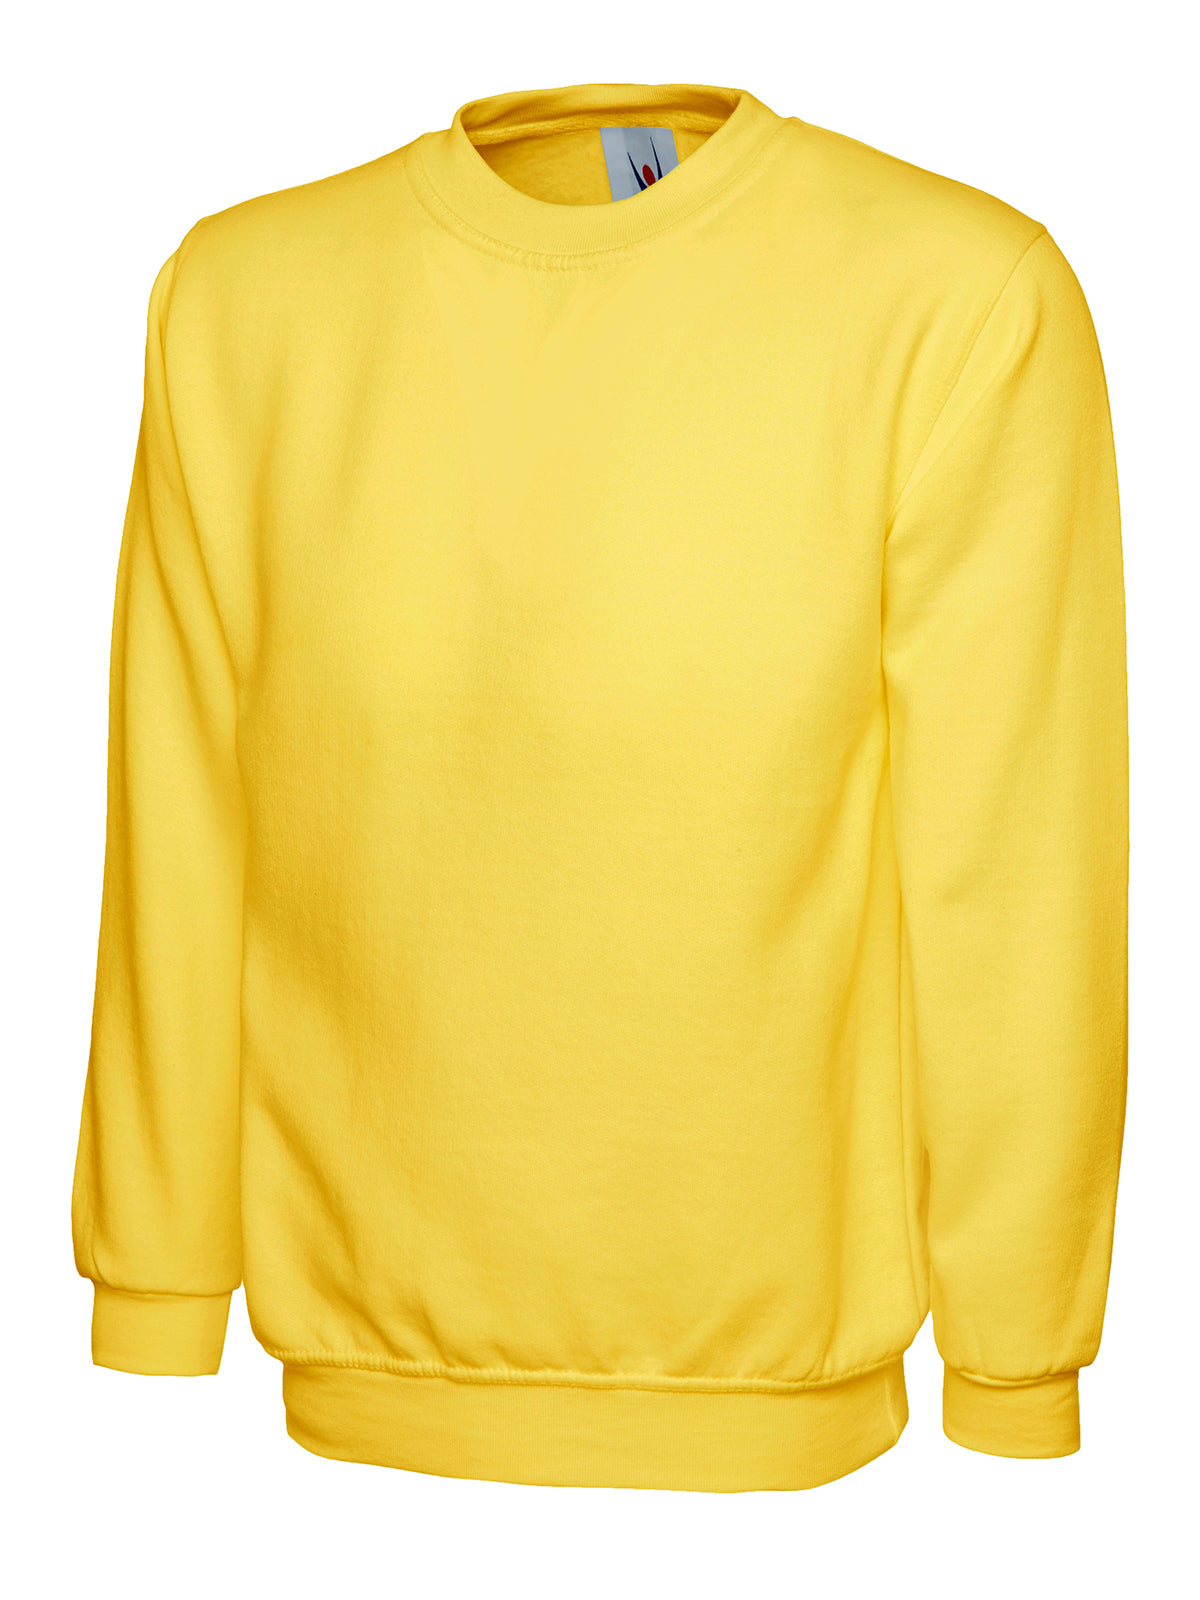 childrens_sweatshirt_yellow